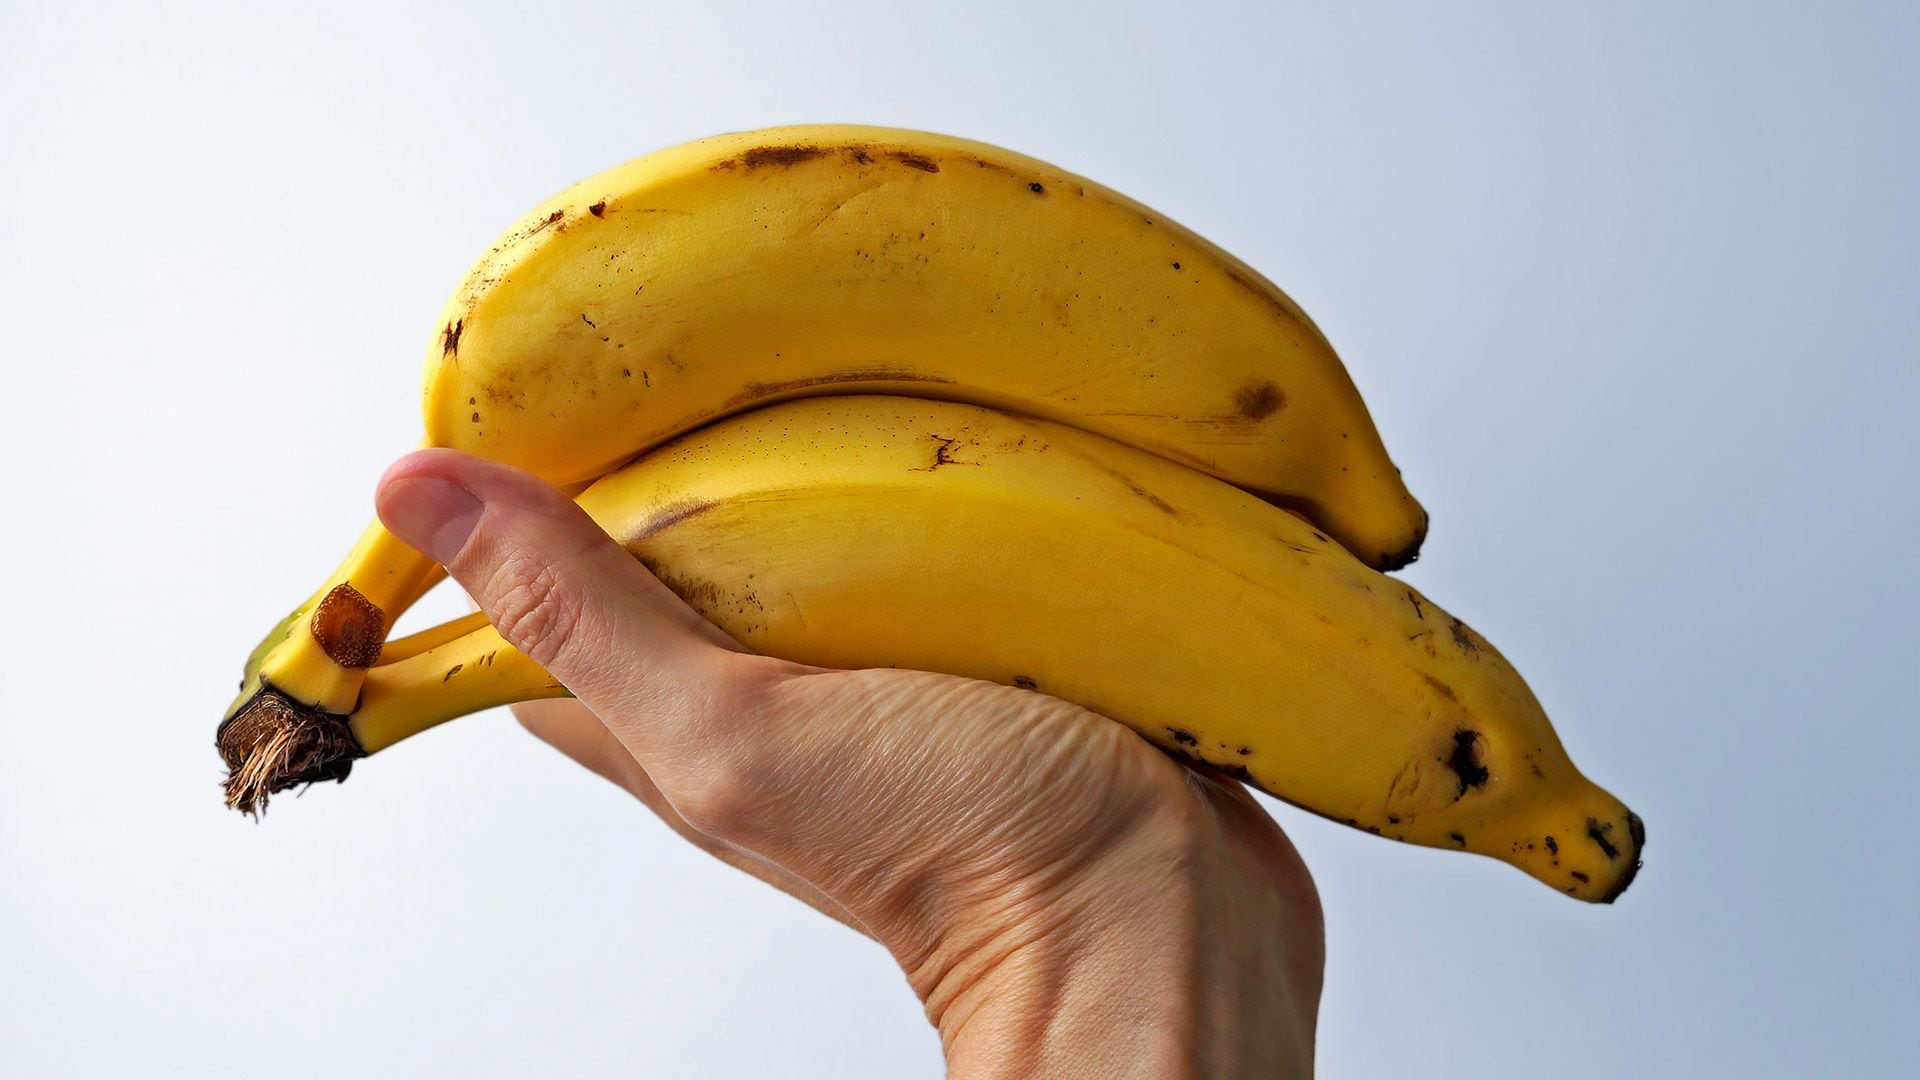 Las bananas tienen potasio. Pero no son las únicas frutas. La mayoría también tiene ese nutriente/Archivo